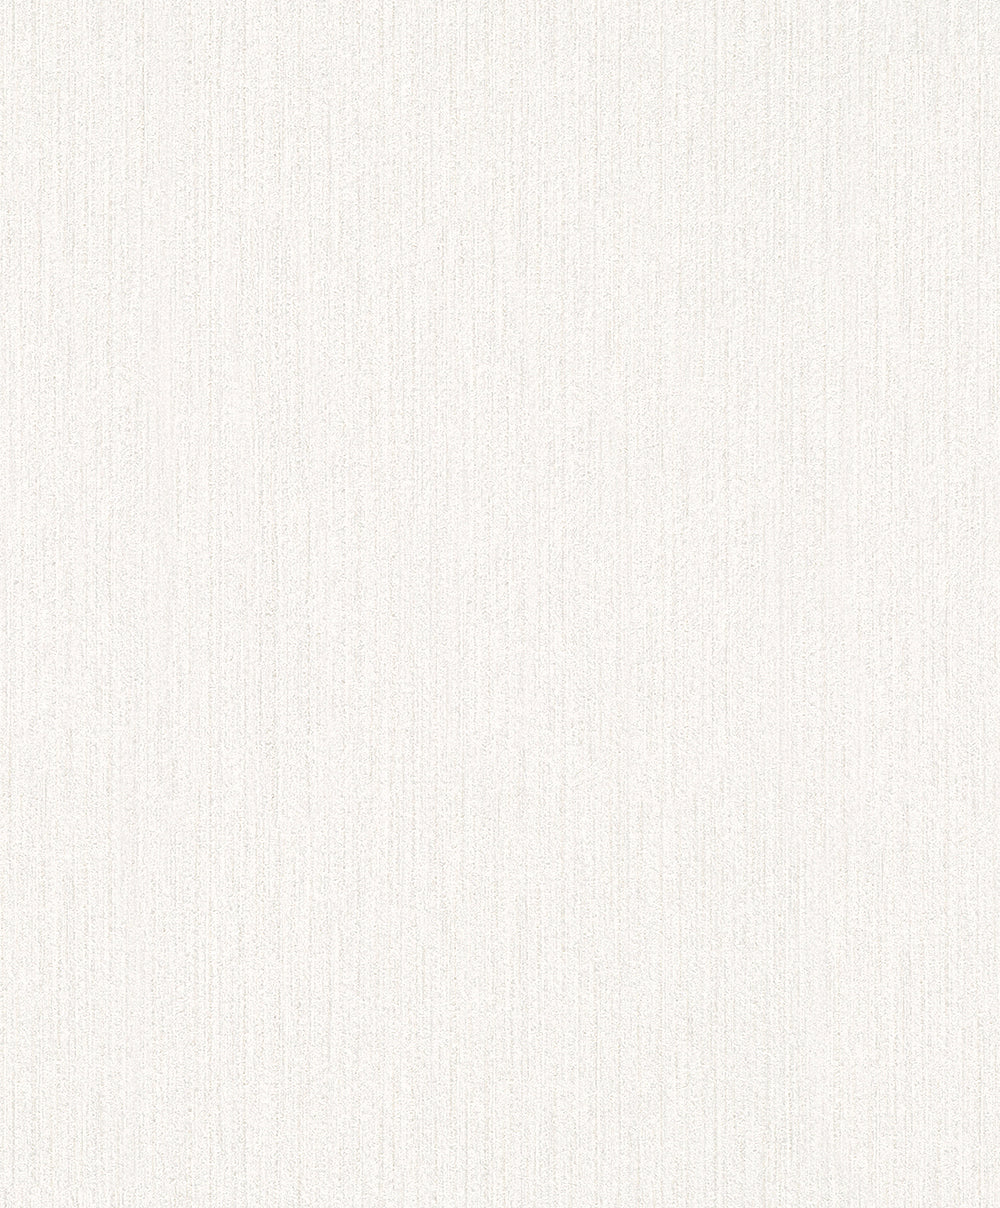 Schoner Wohnen New Spirit - Ambient bamboo weave plain wallpaper Marburg Roll Cream  32740